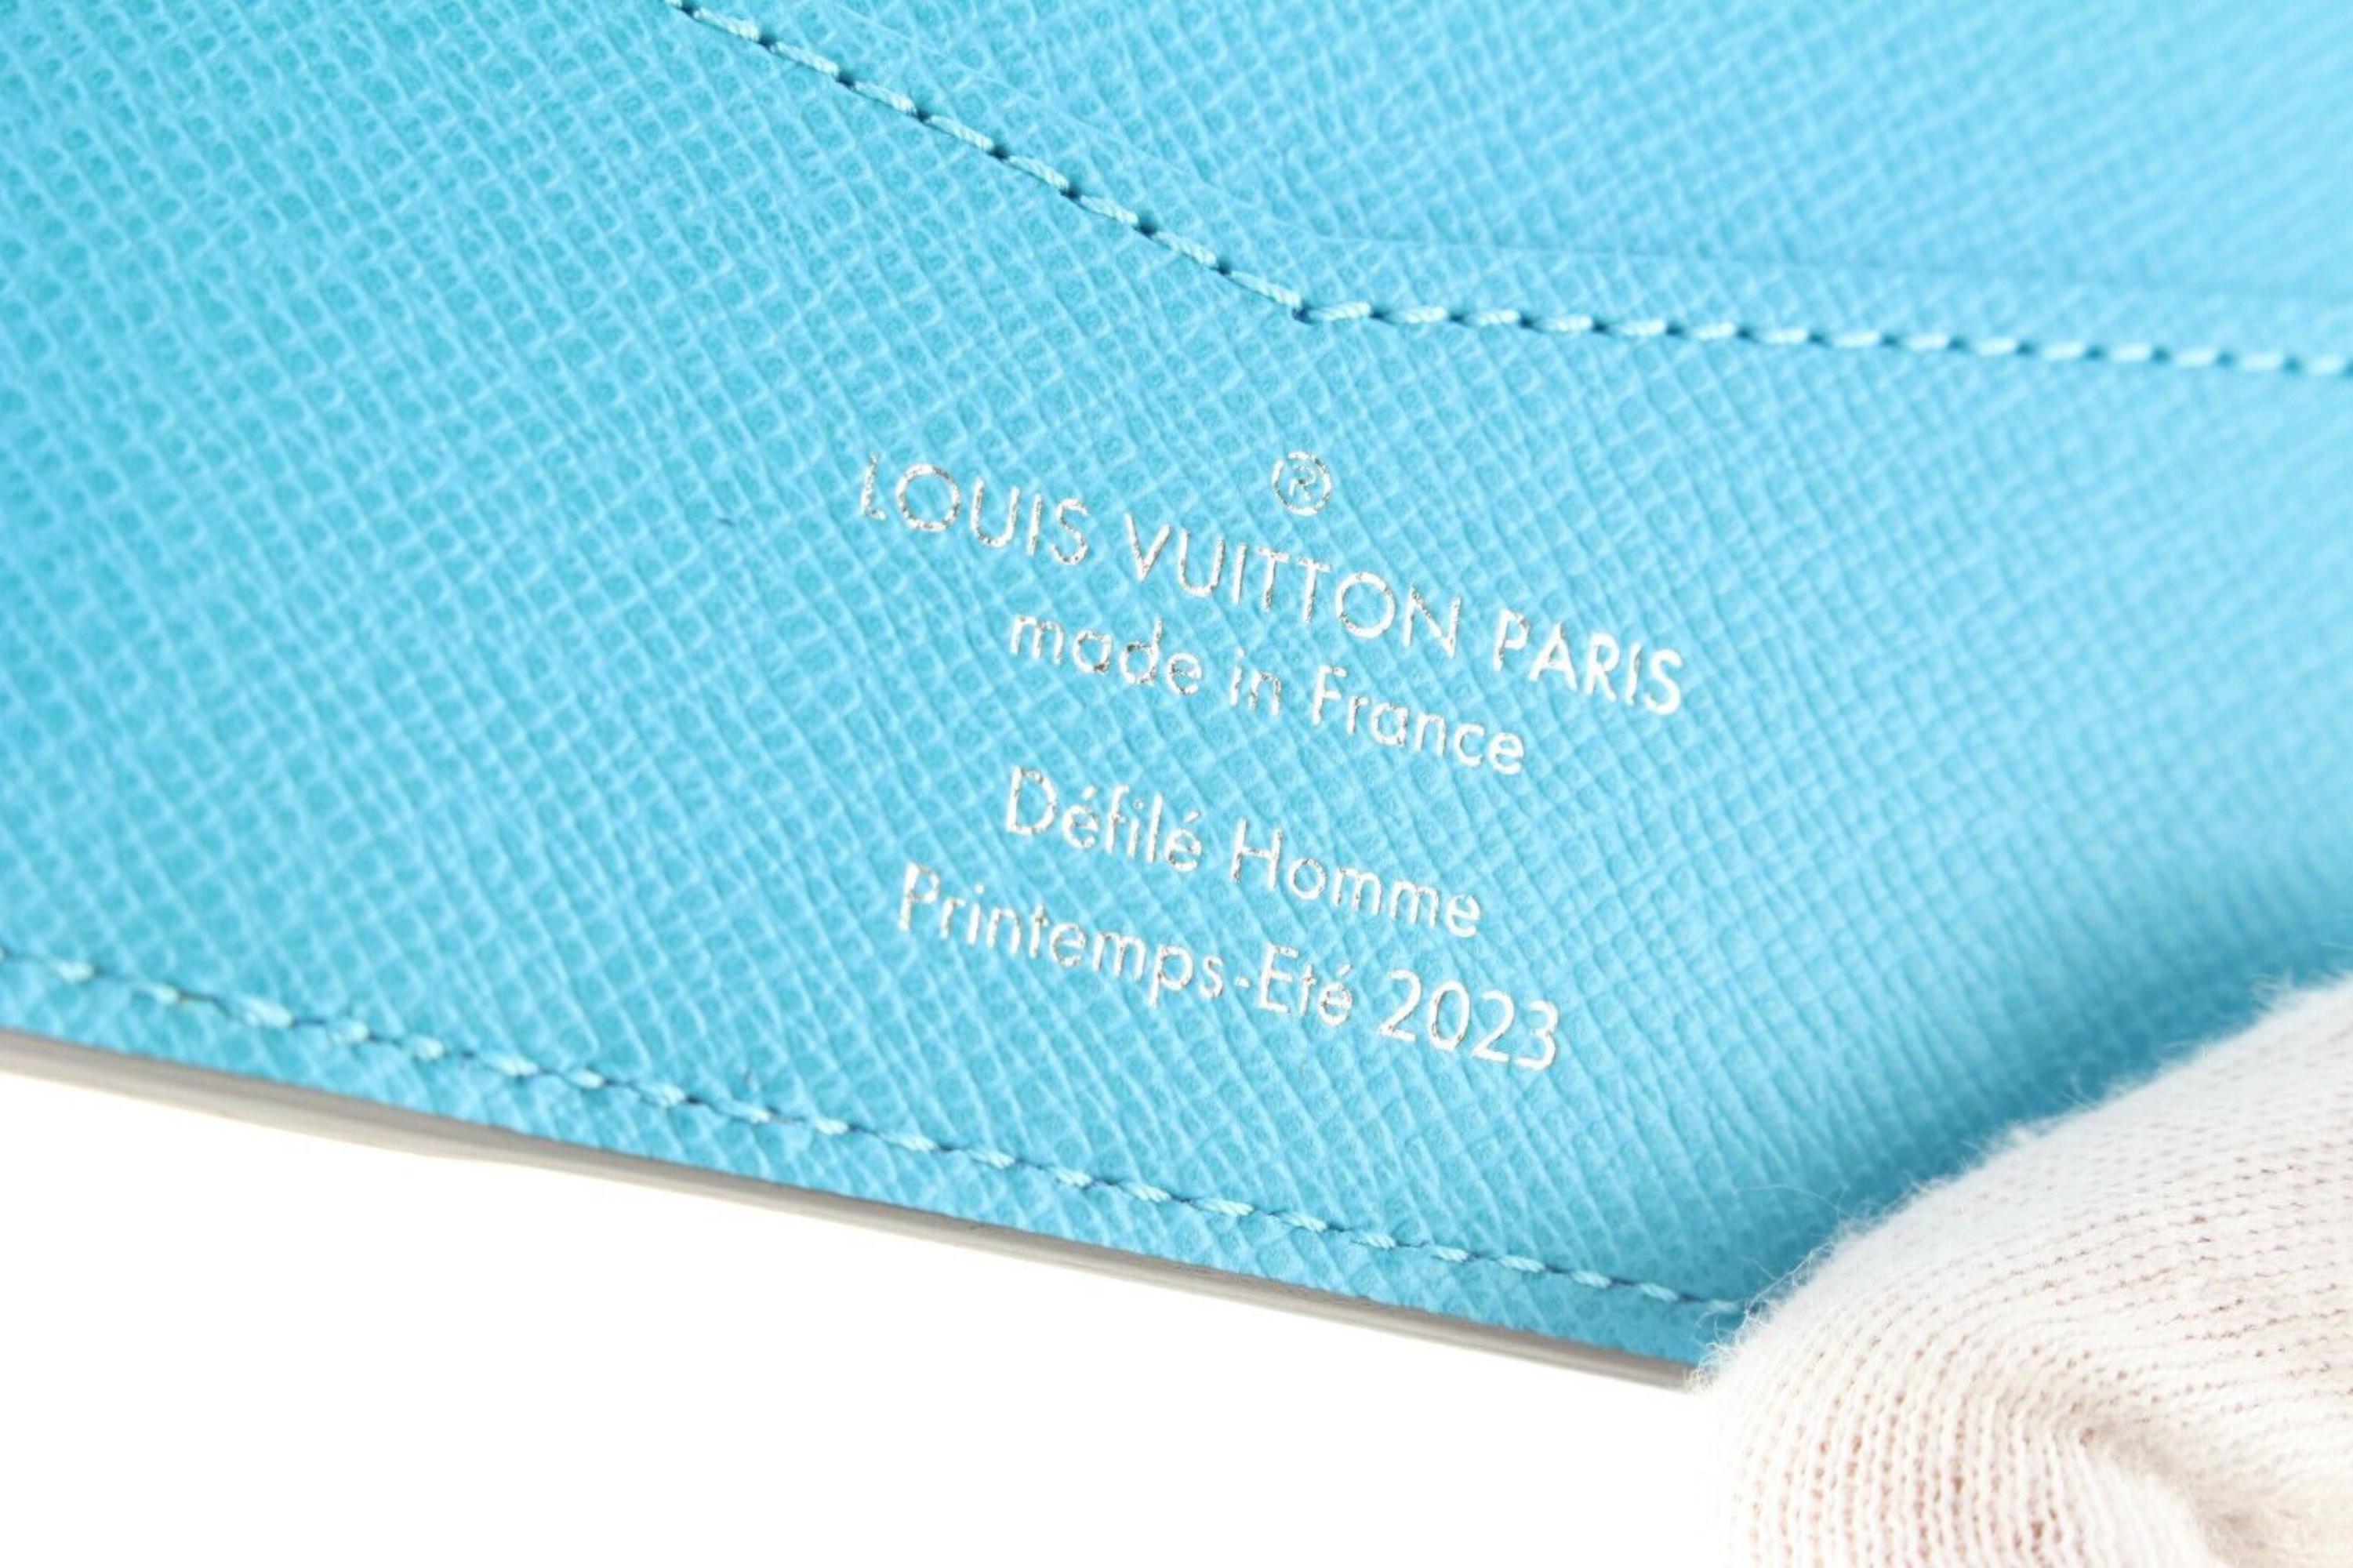 Louis Vuitton Slender Wallet at 1stDibs  louis vuitton wallet, louis  vuitton men, lv slender wallet